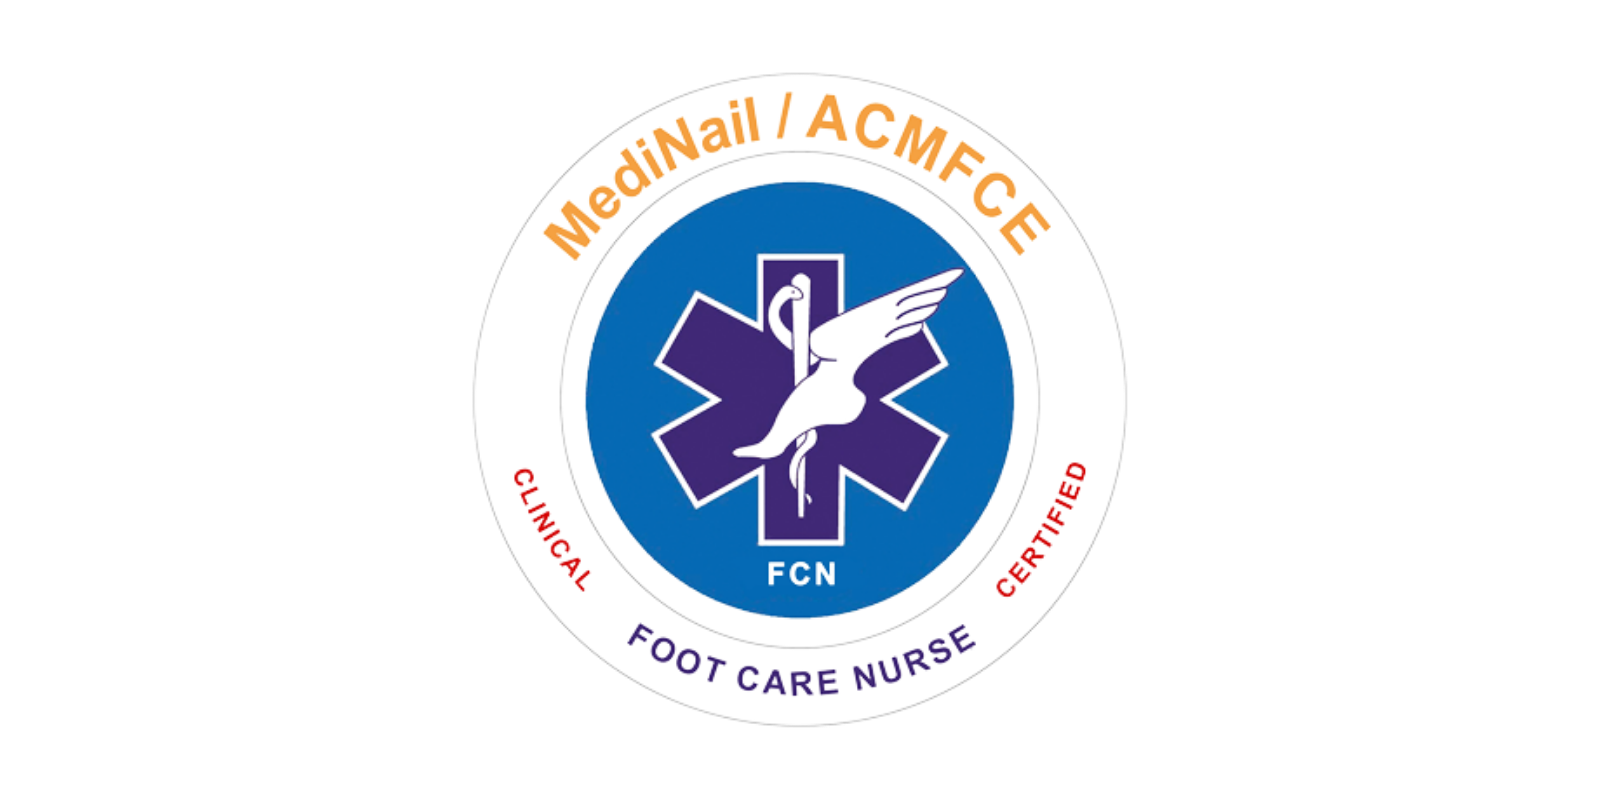 ACMFCE Certified Clinical Foot Care Nurse Program